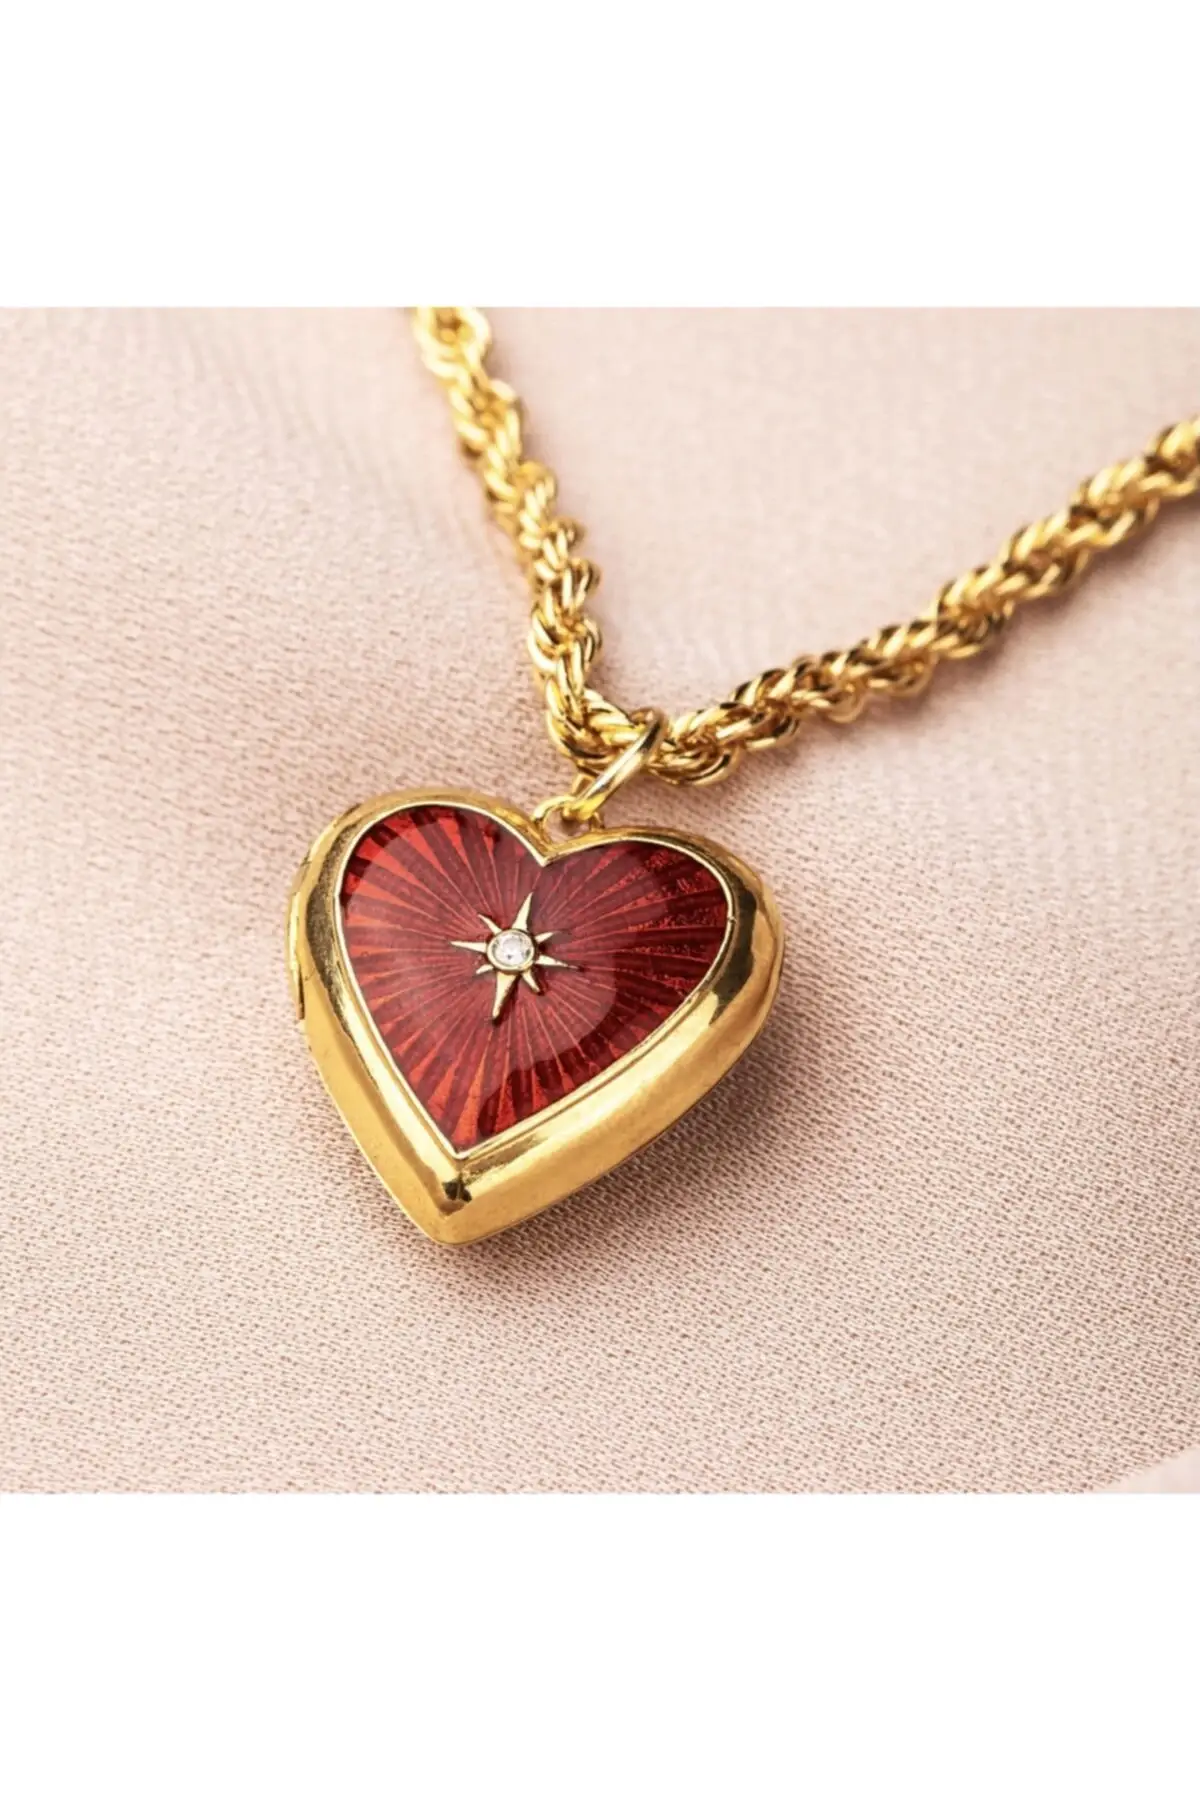 

Женская бижутерия ожерелье красный минлет медальон фото офис открытие сердце ожерелье